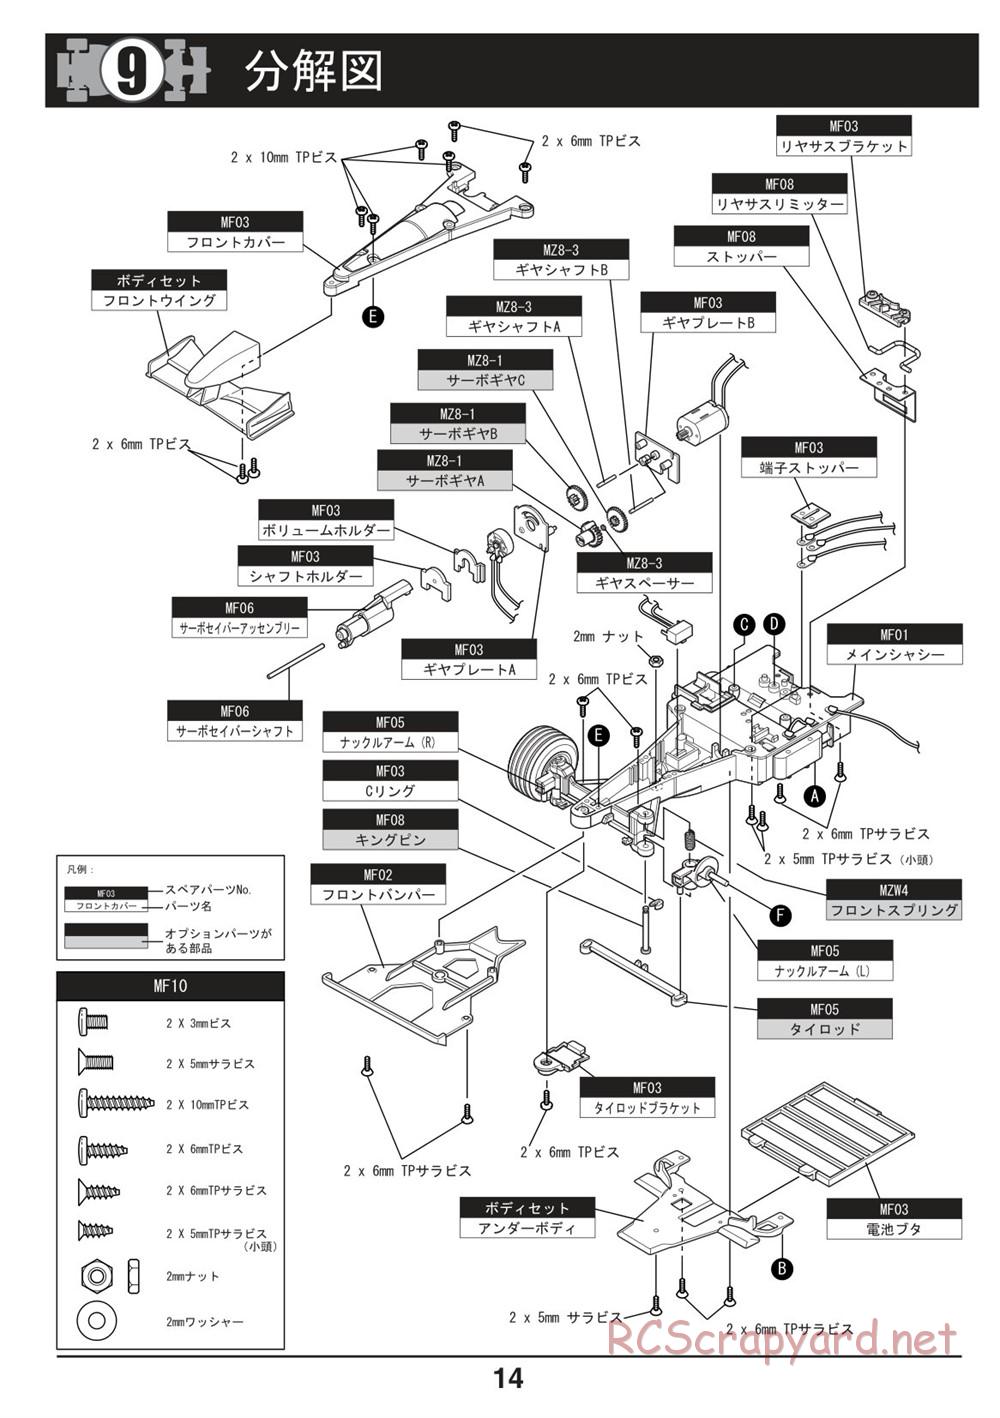 Kyosho - Mini-Z F1 - Manual - Page 14